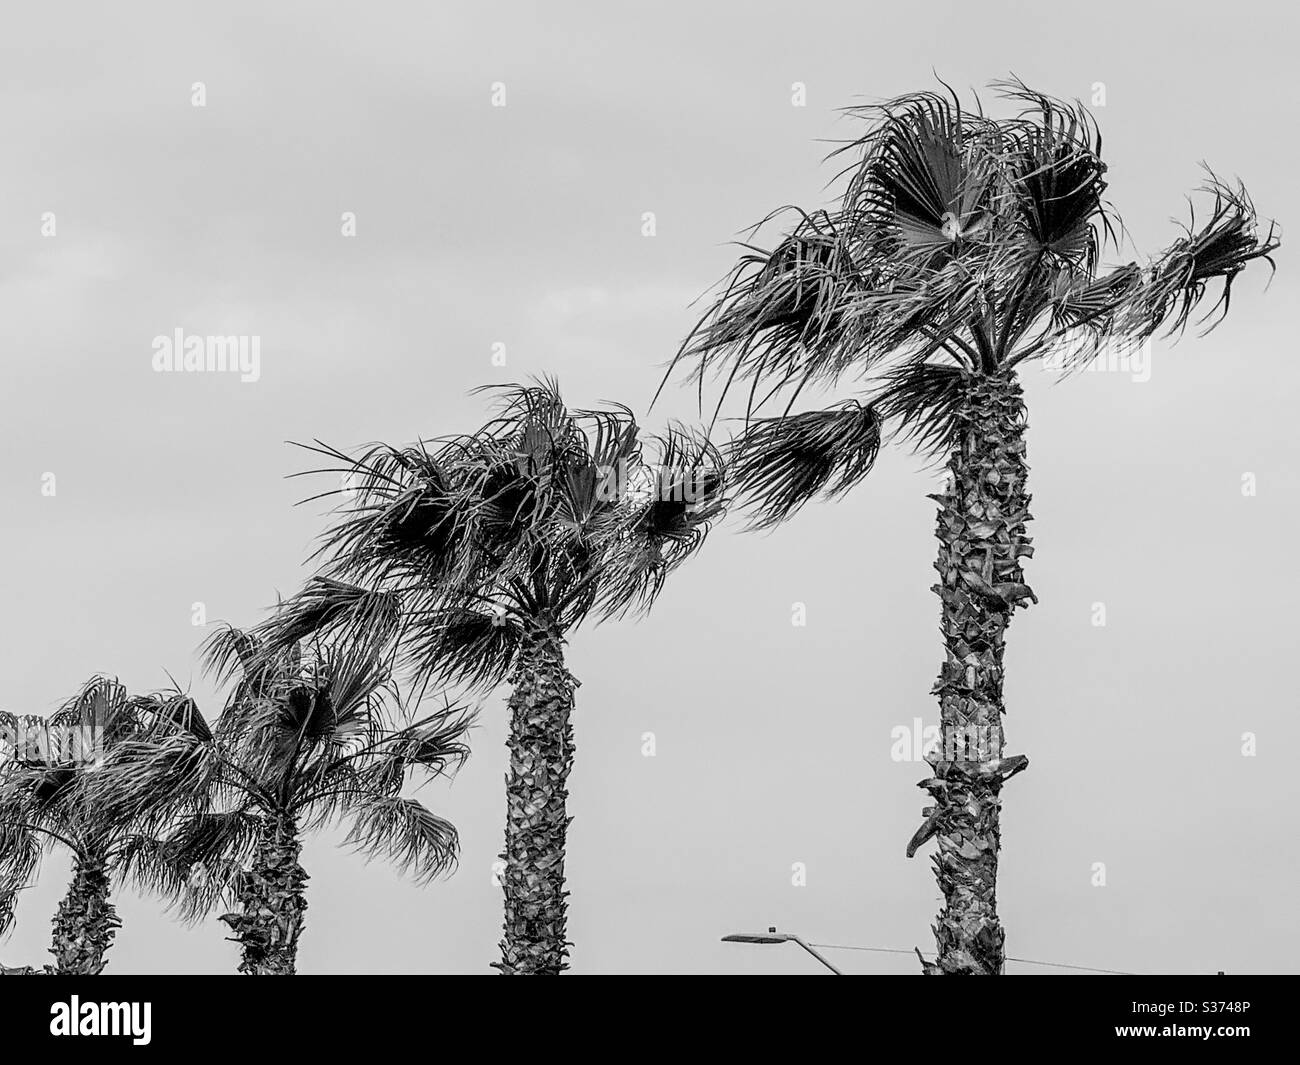 Noir et blanc de palmiers contre le ciel Banque D'Images